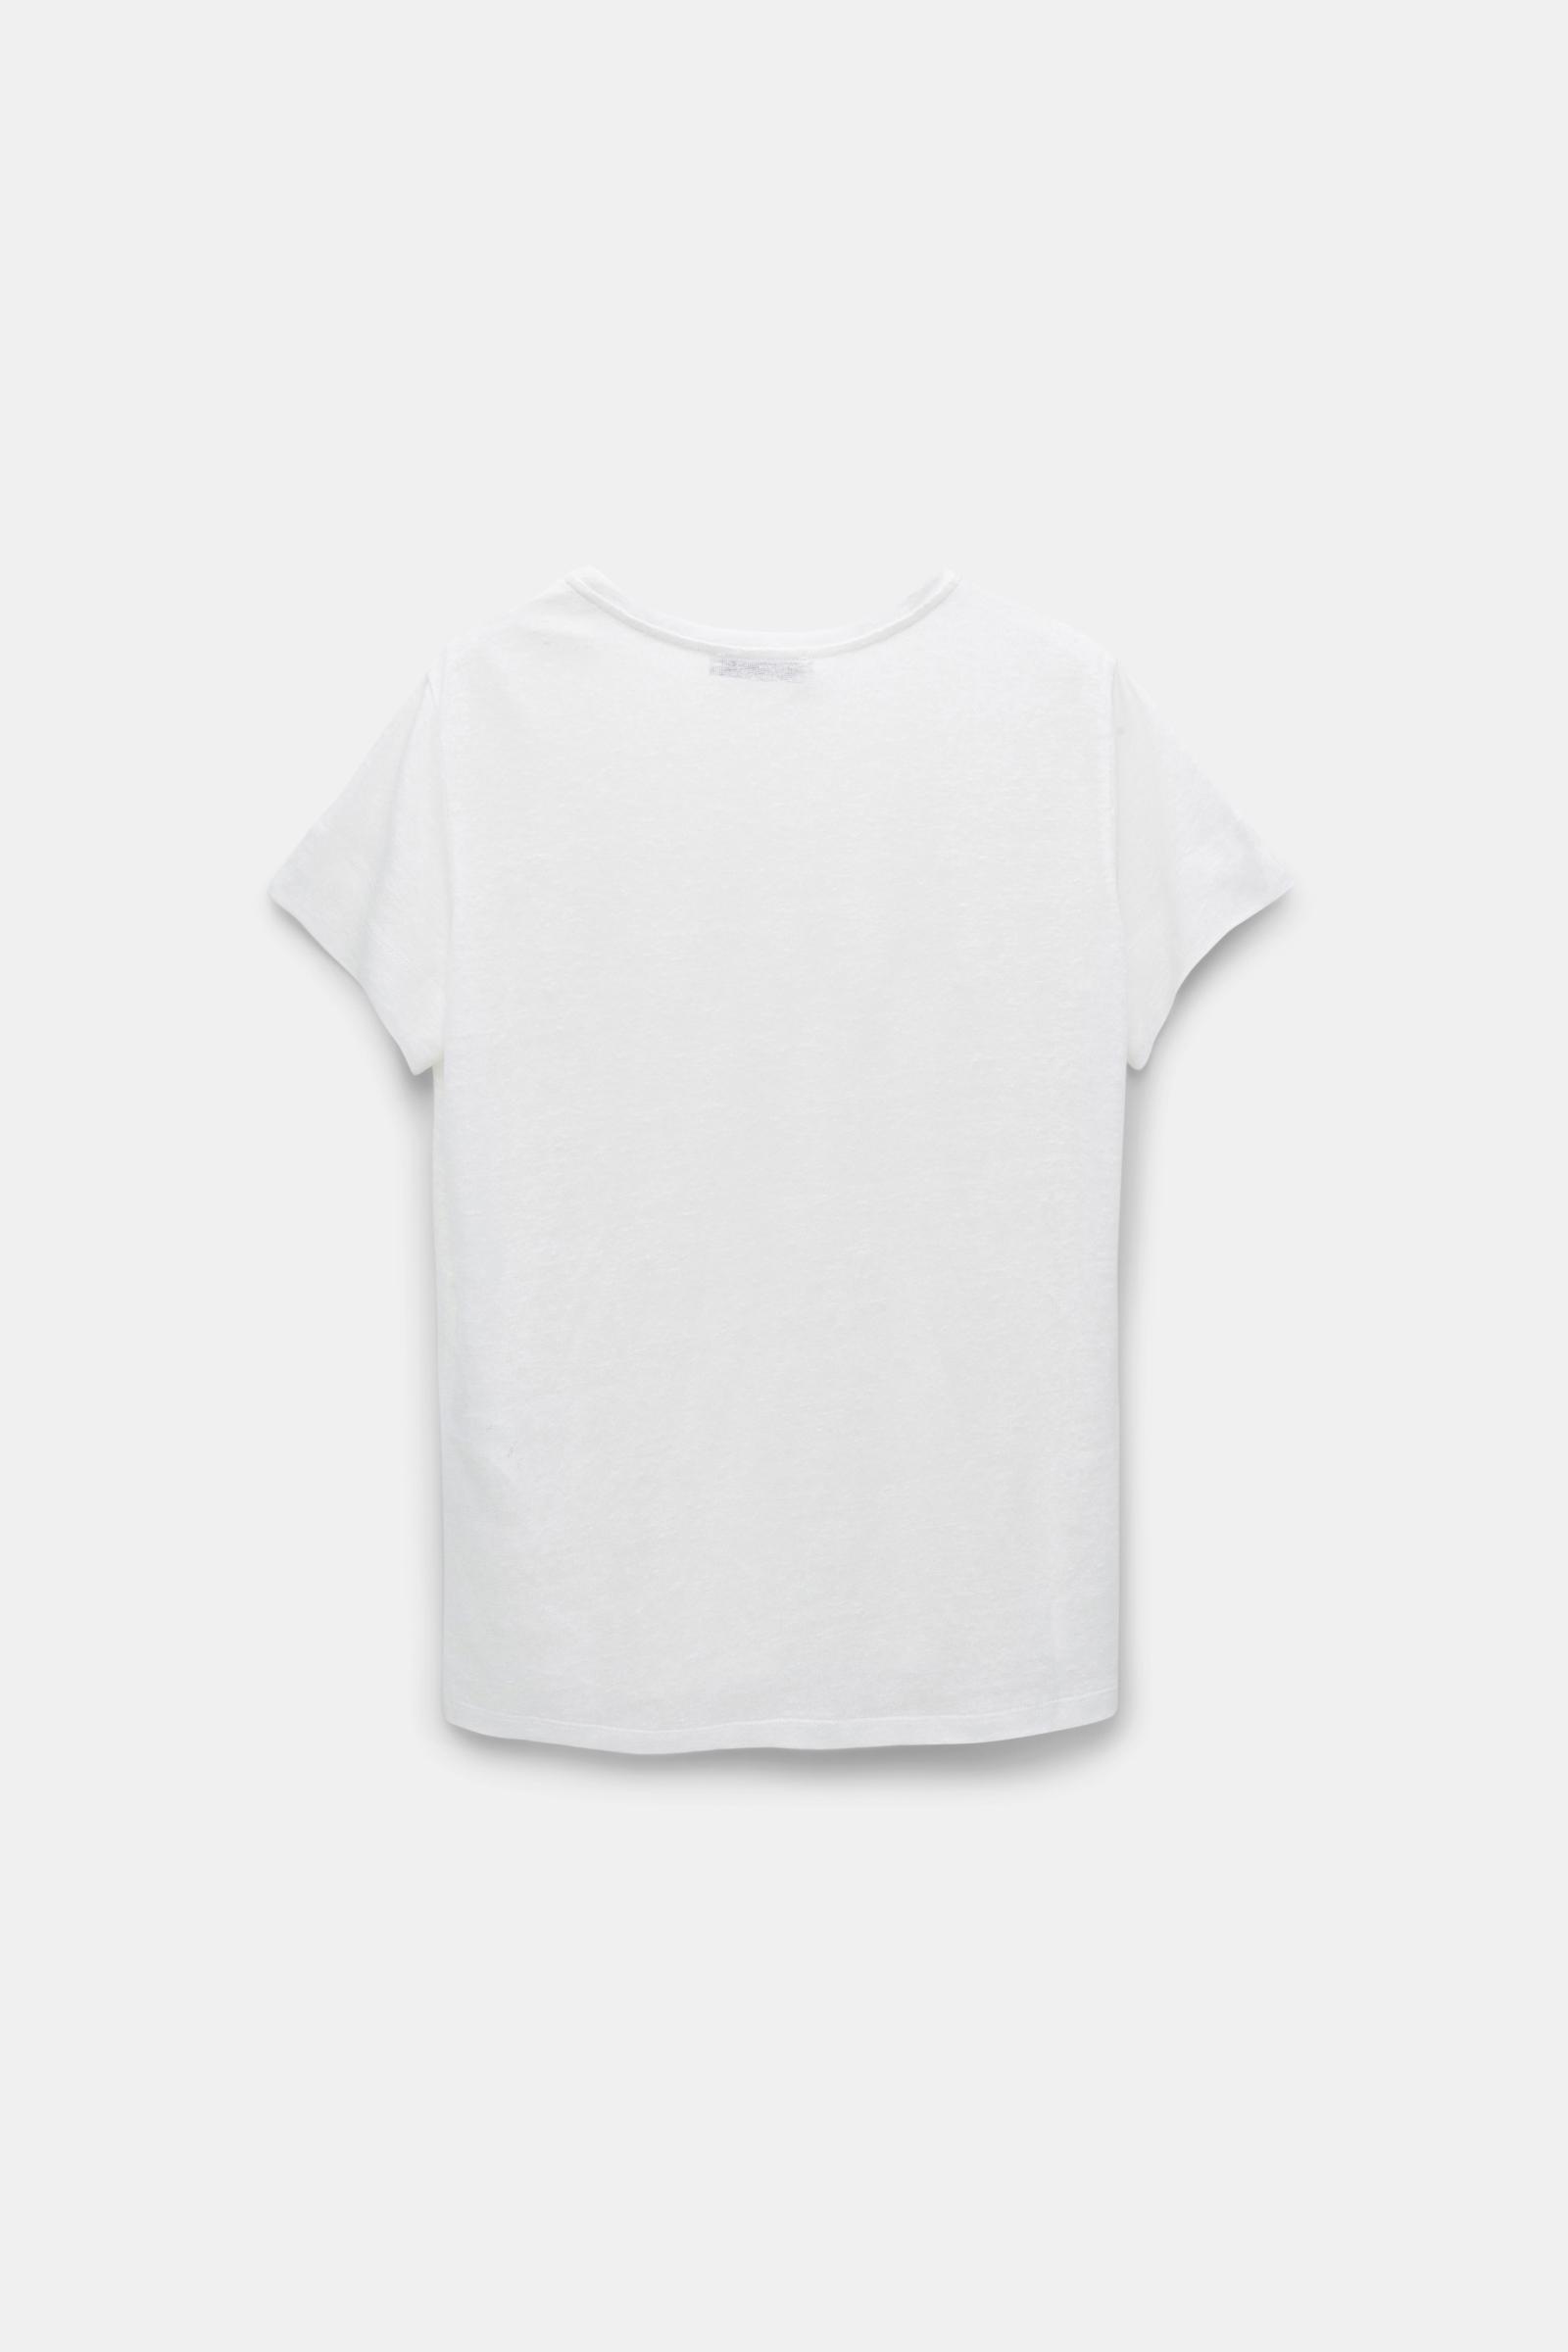 Dorothee Schumacher Round neck hemp T-shirt shaded white